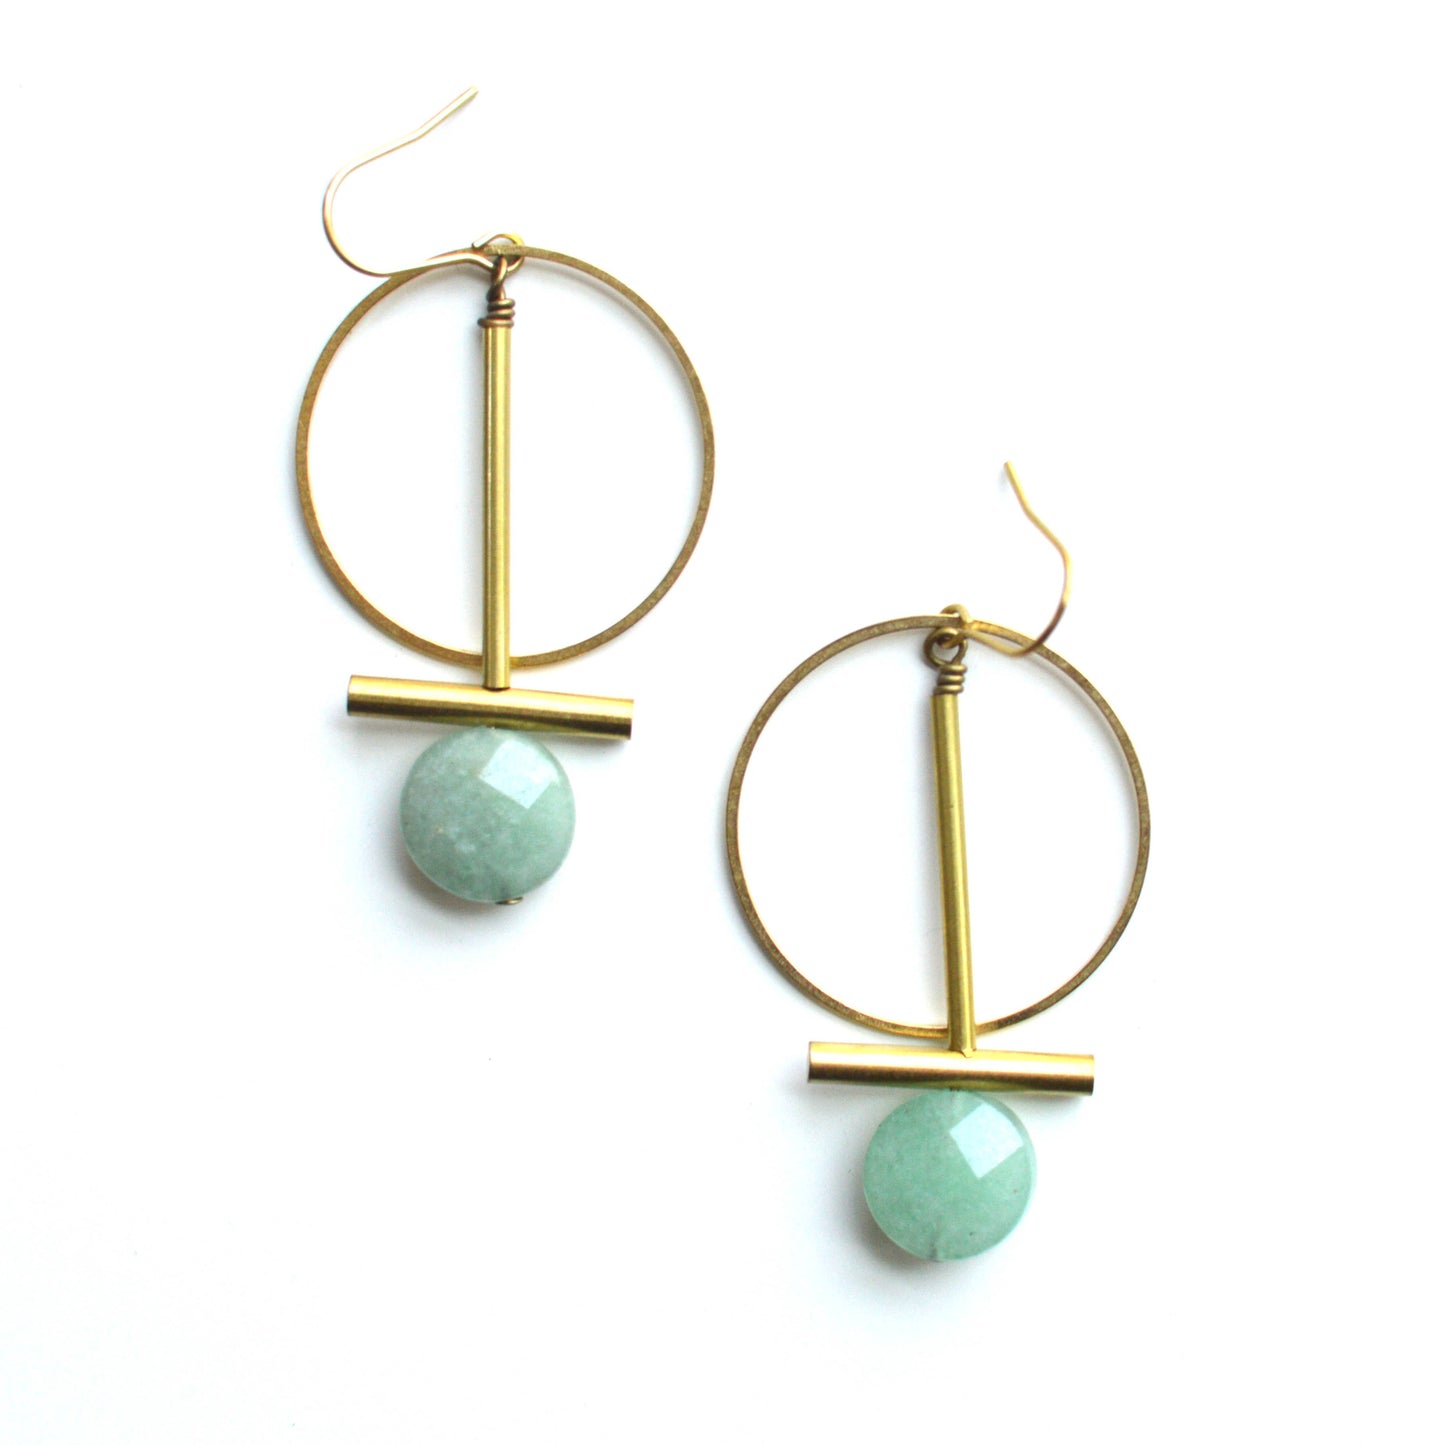 Ker-ij Jewelry - Shelton Earrings: Green Aventurine